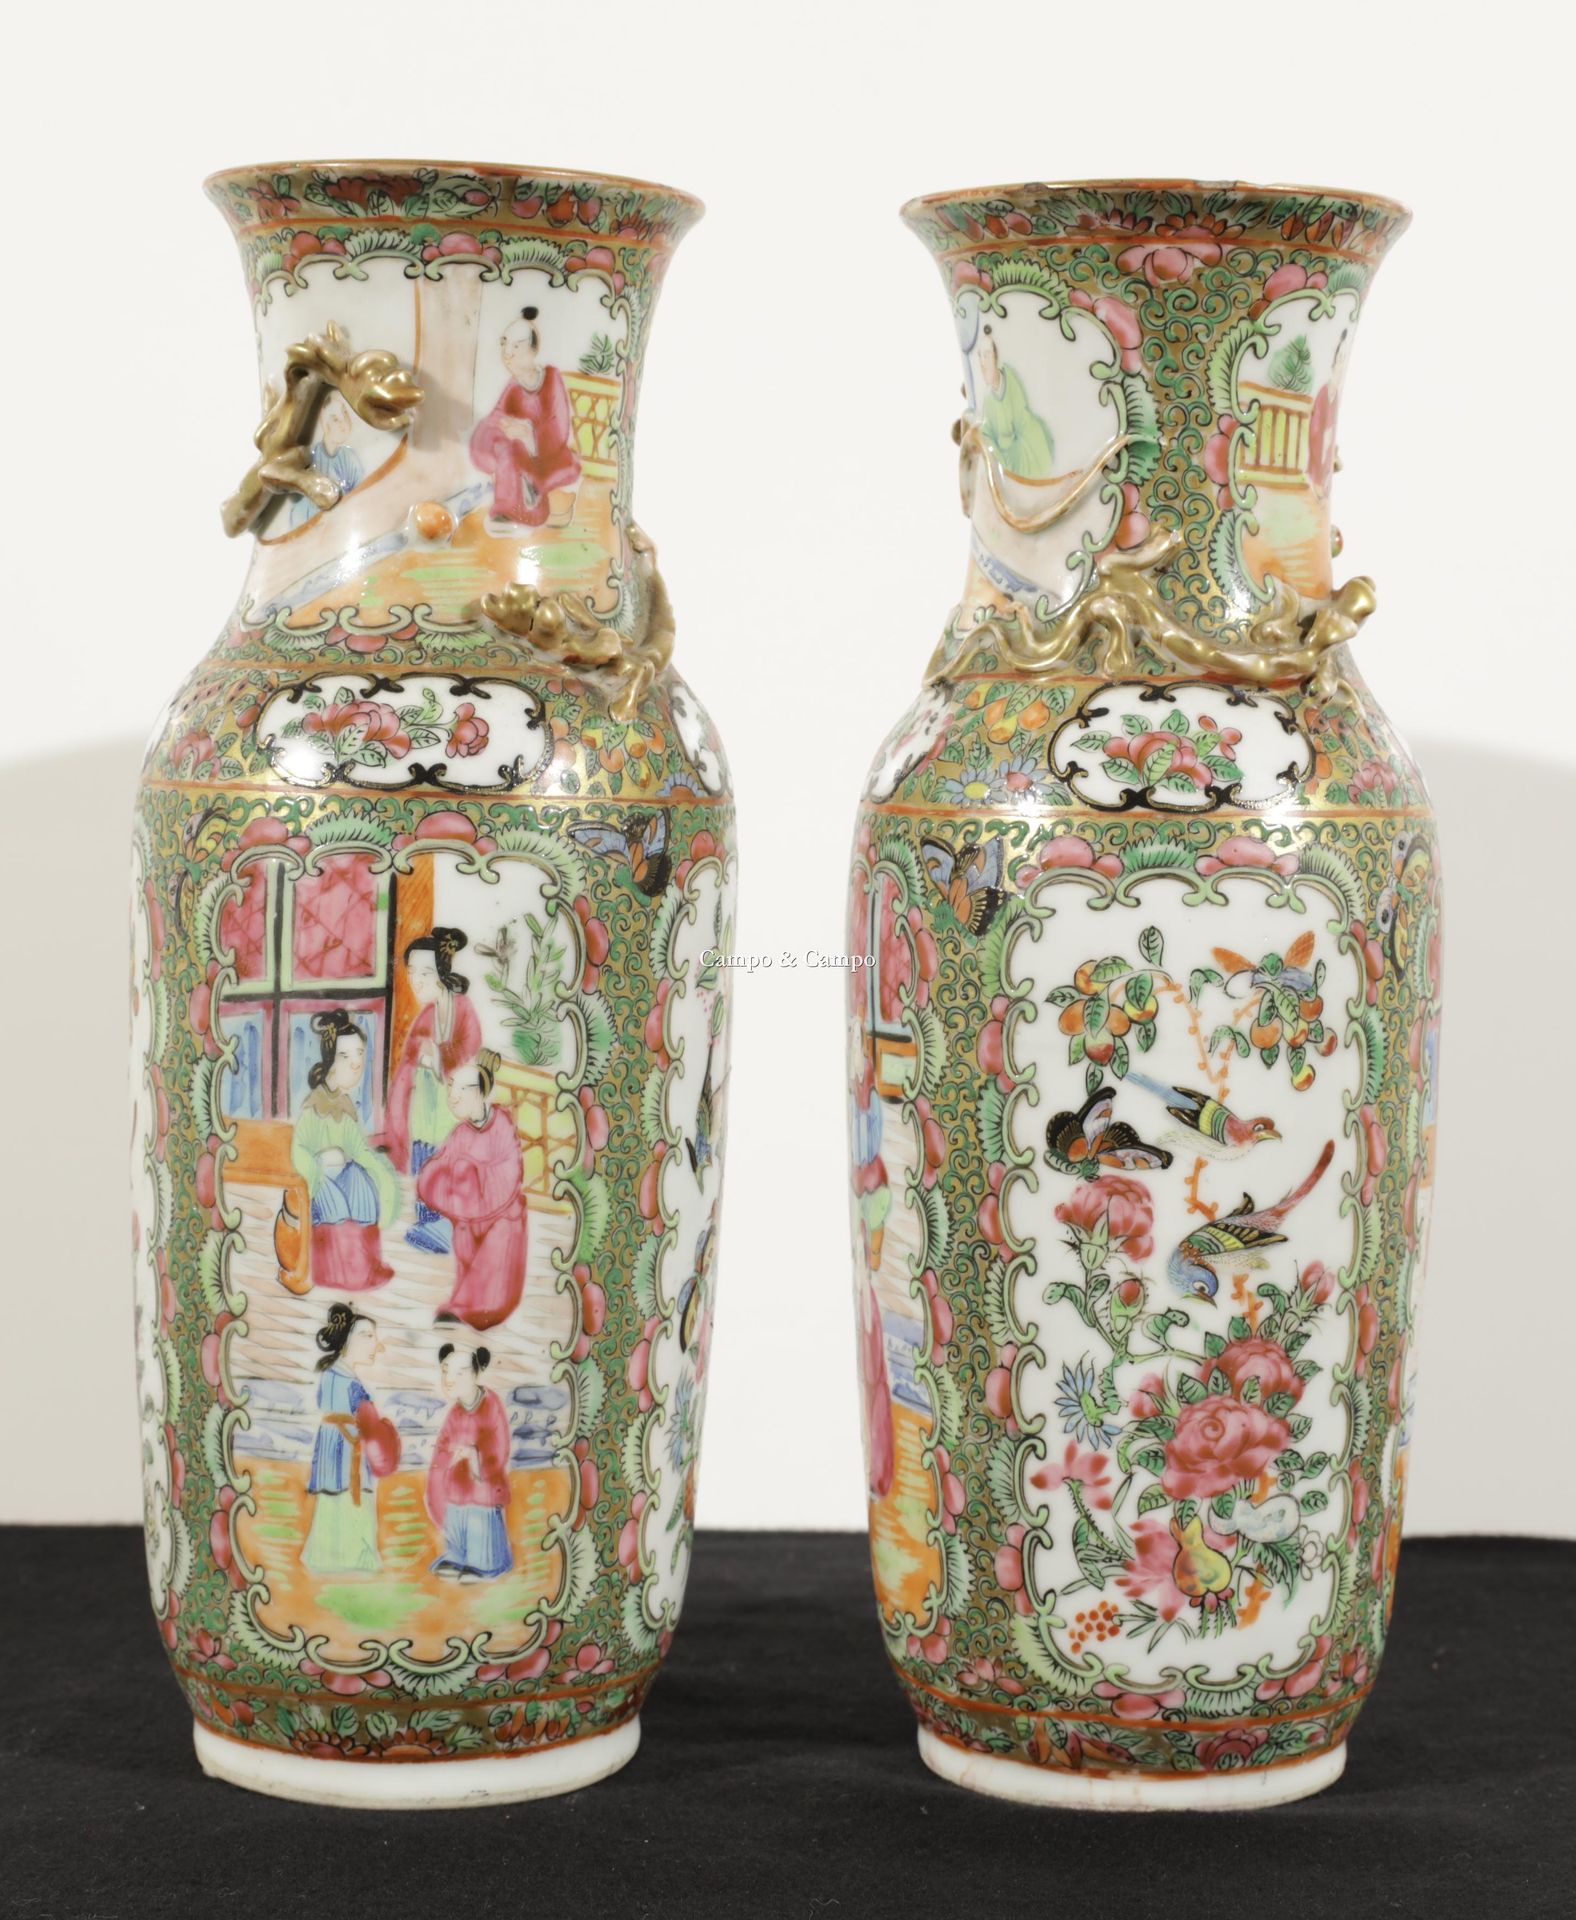 VARIA Paar Vasen aus Kanton-Porzellan mit Drachendekor auf dem Hals
Paar vazen v&hellip;